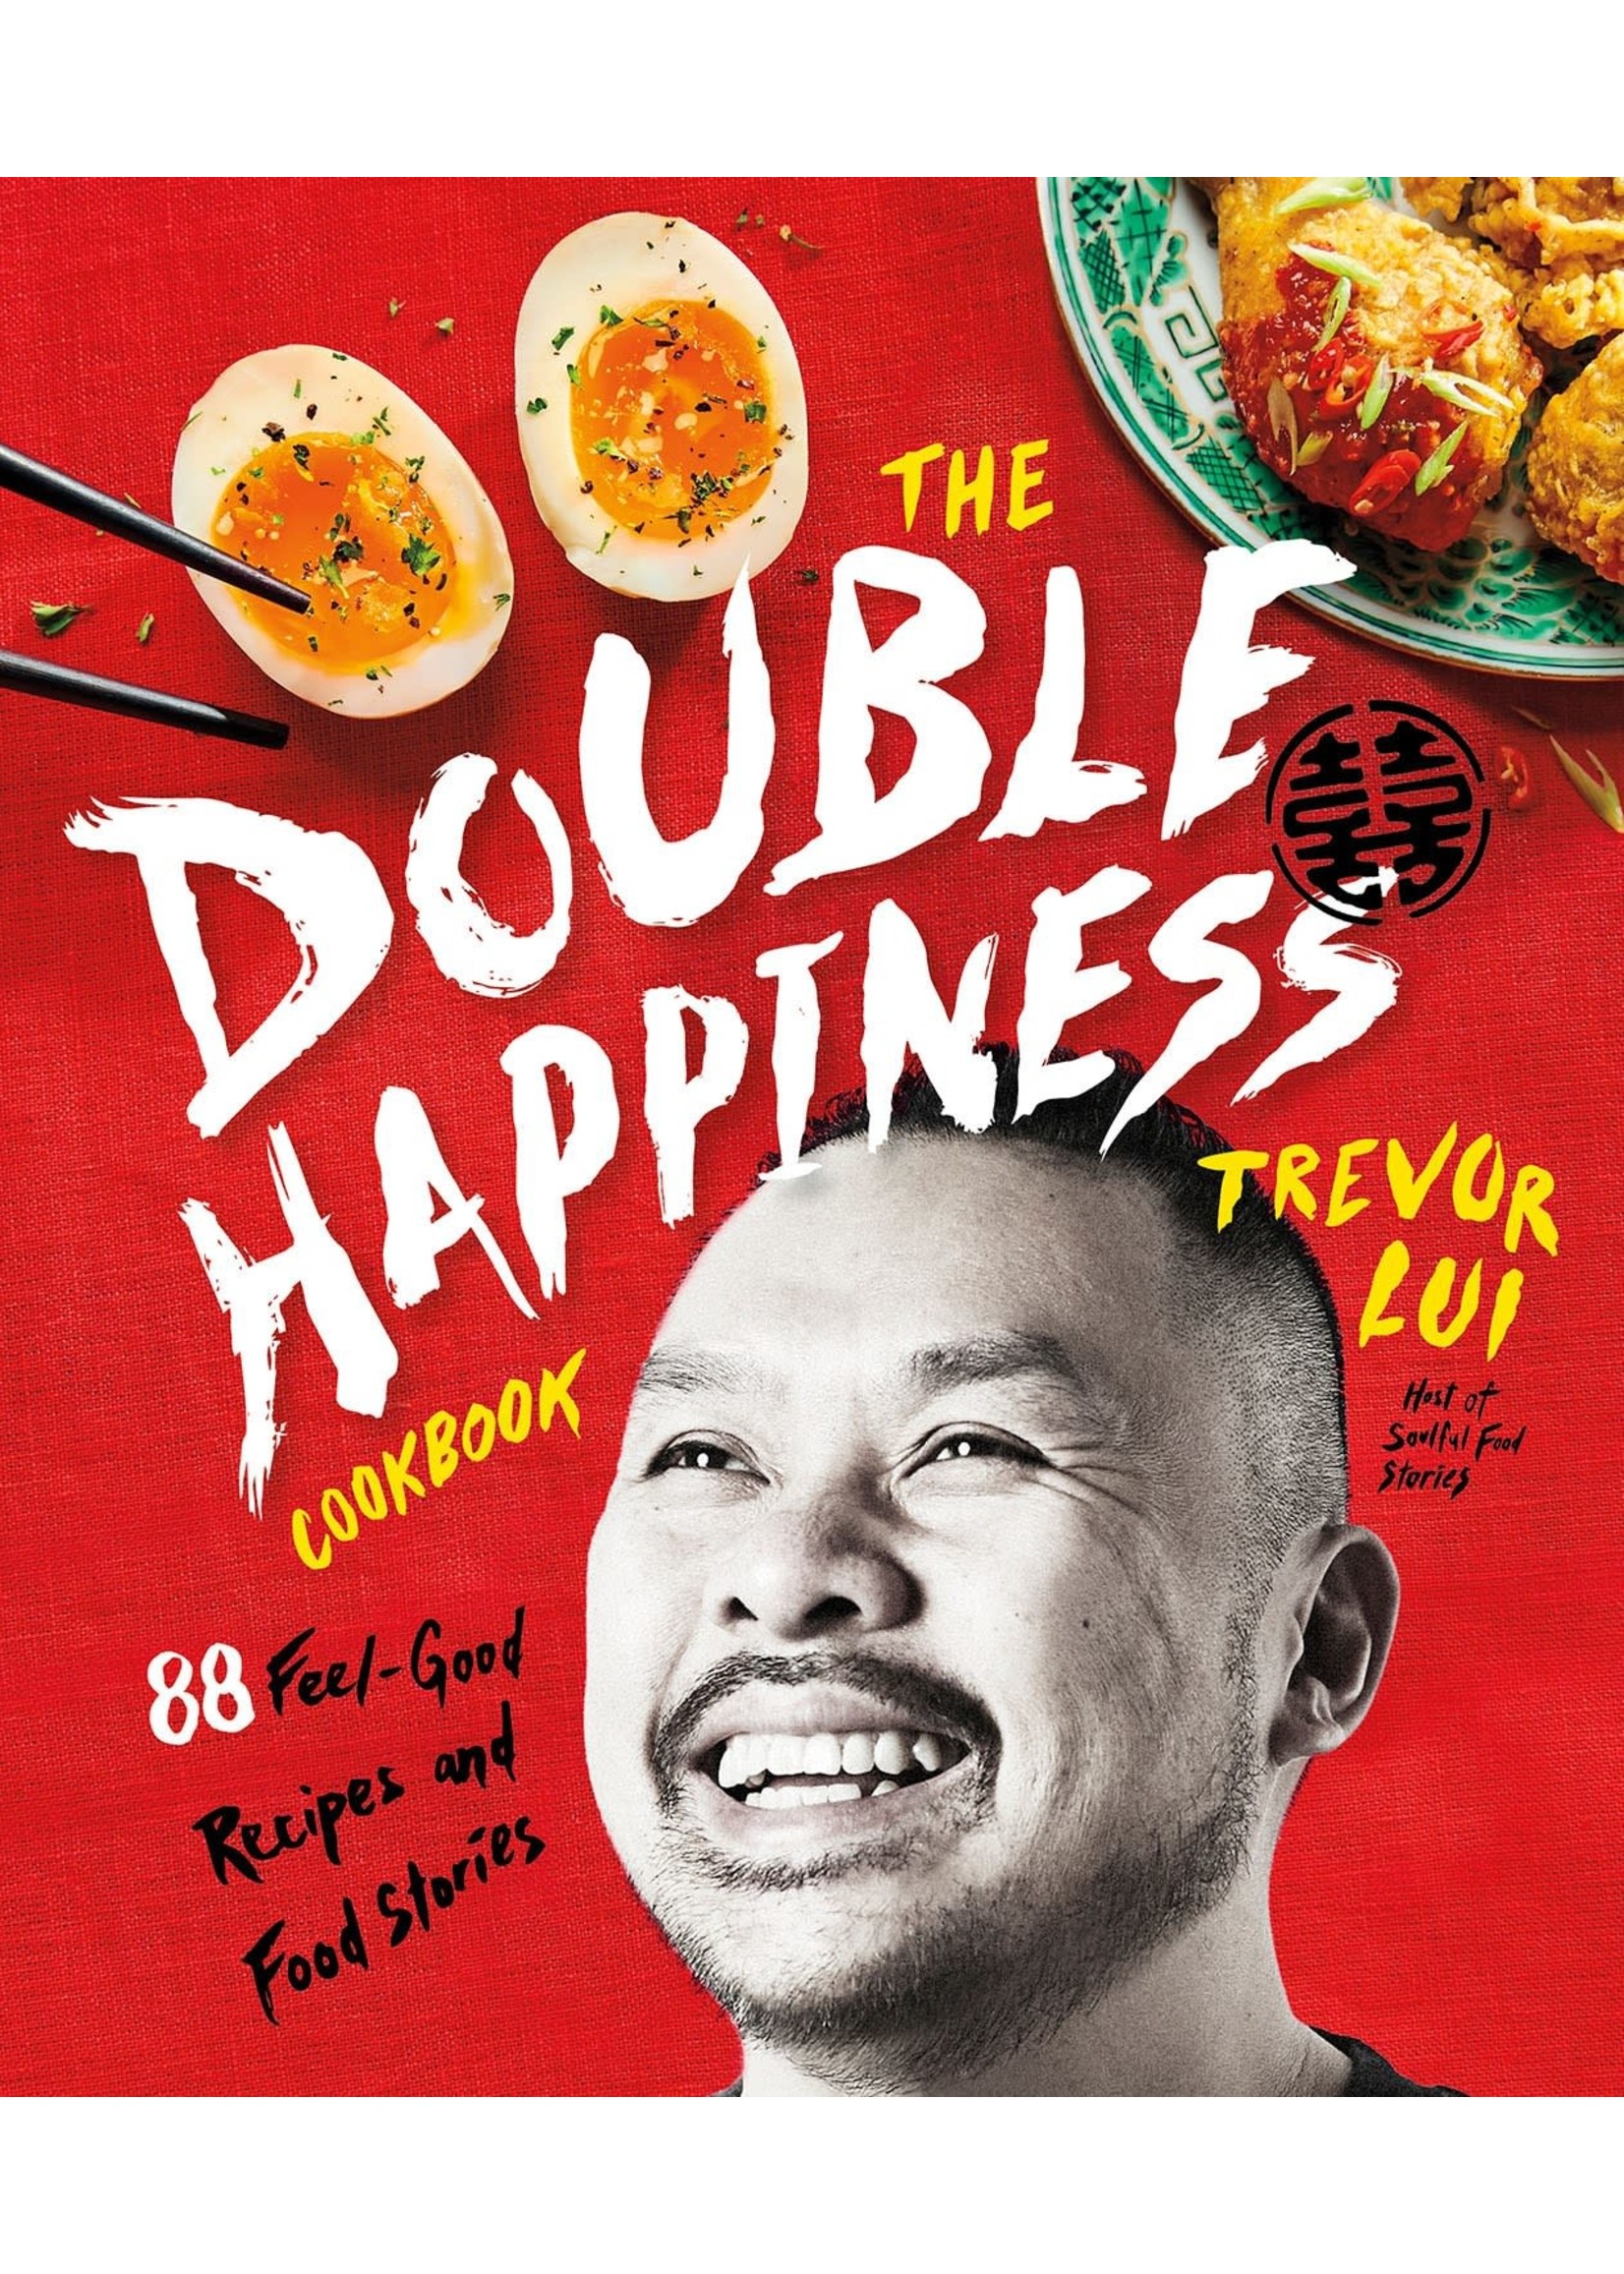 Figure.1 The Double Happiness Cookbook - Trevor Lui